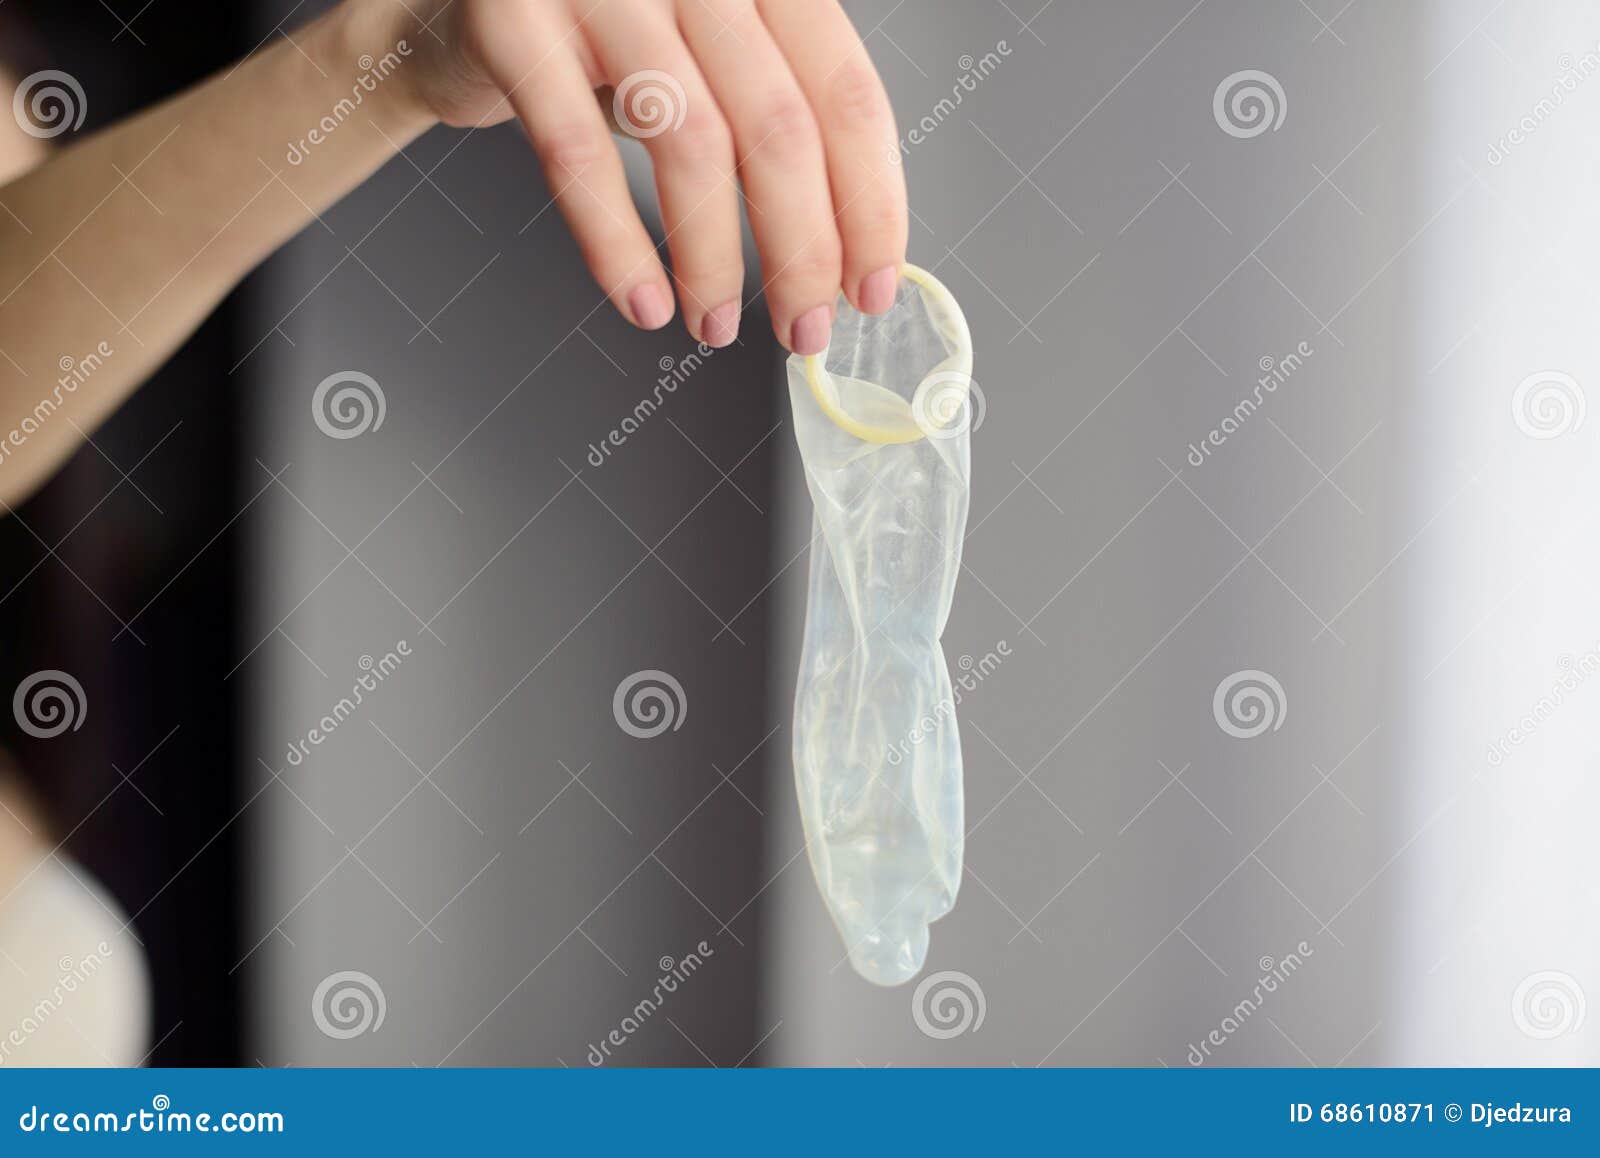 Condom image